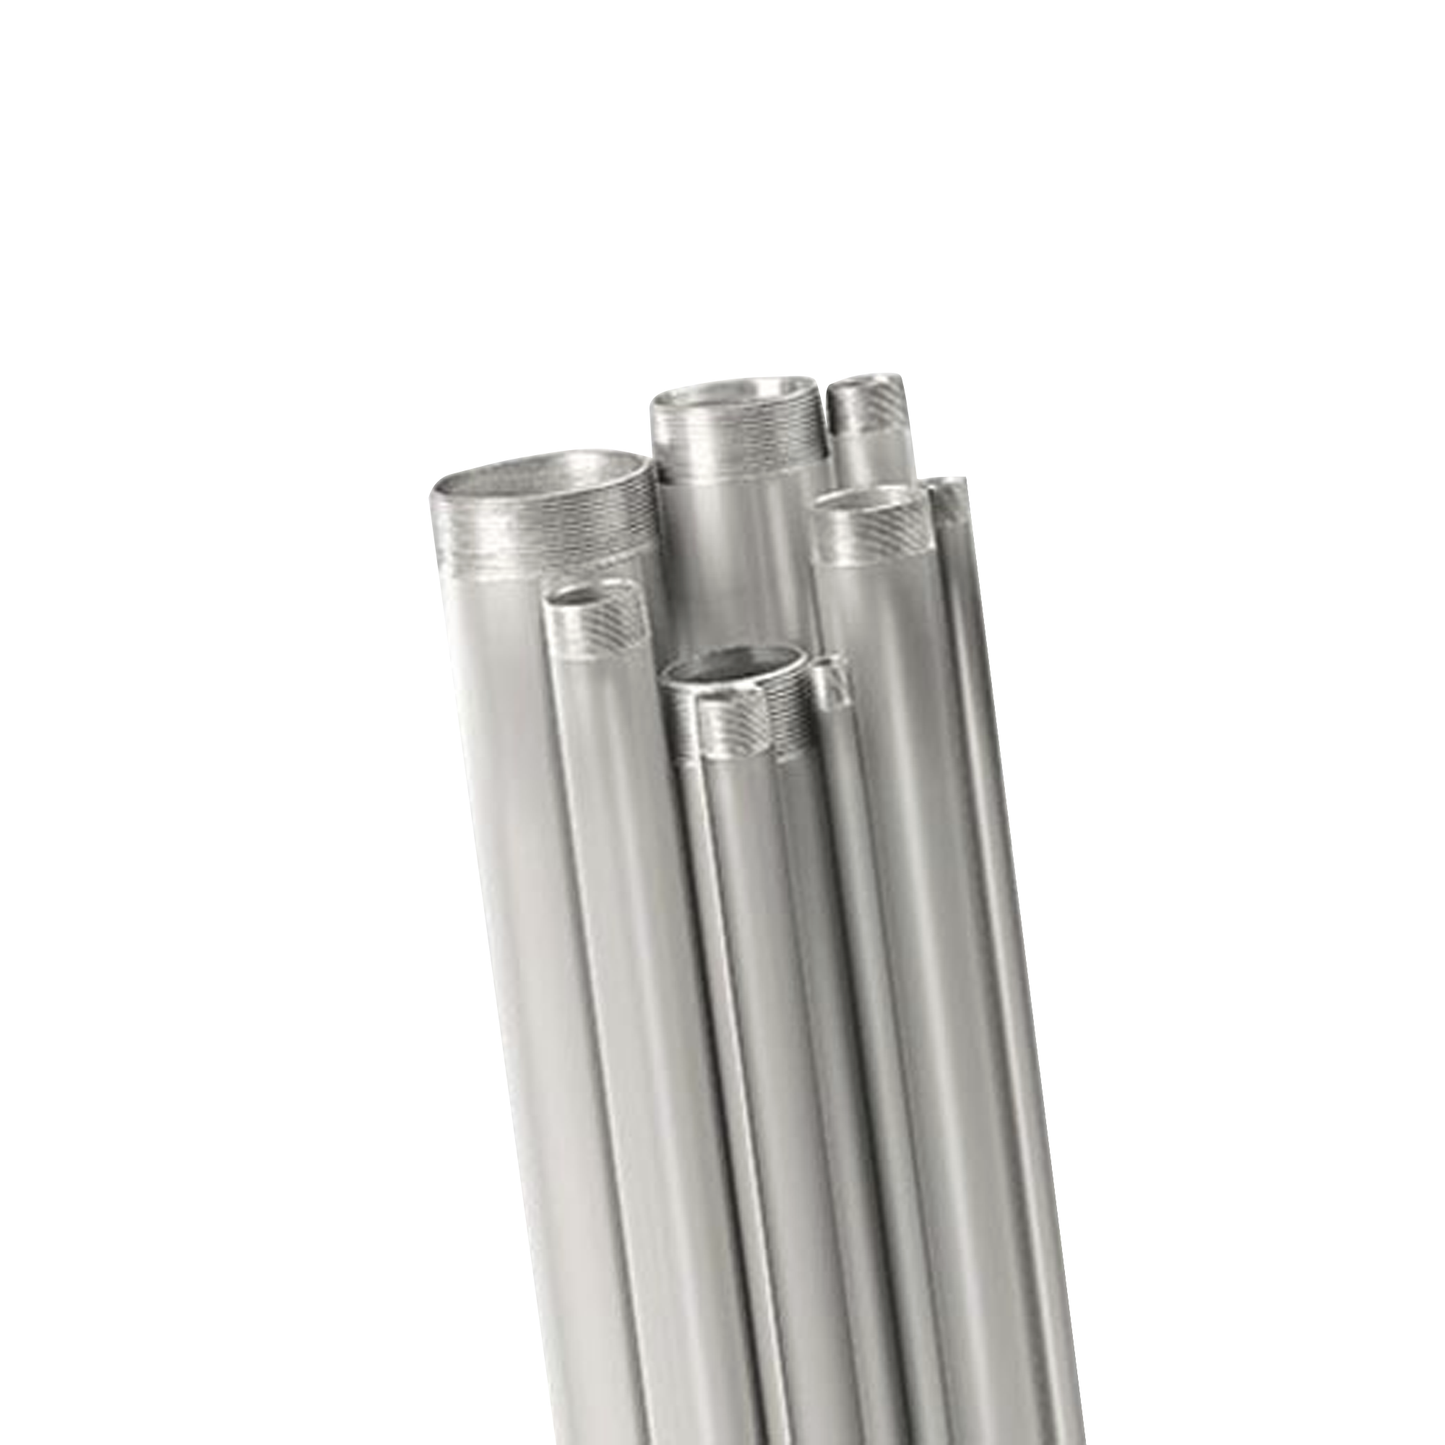 Tubo conduit  rígido de aluminio de 25.4 x 3050 mm (1" x 10').